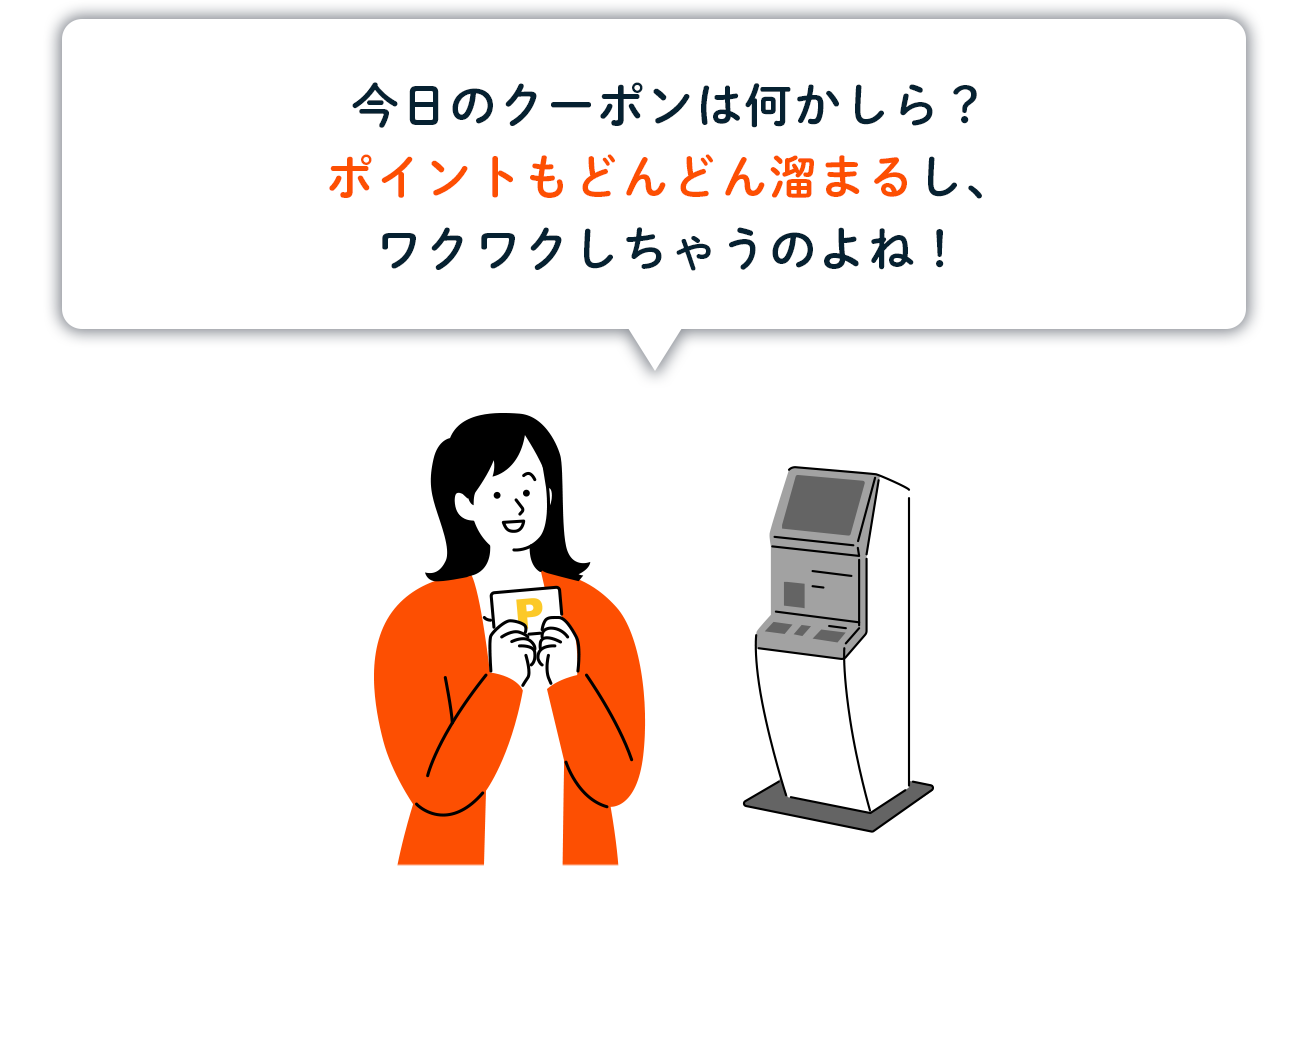 来店されるお客さまにとってのチャージ機能付きKIOSK端末の利用メリット